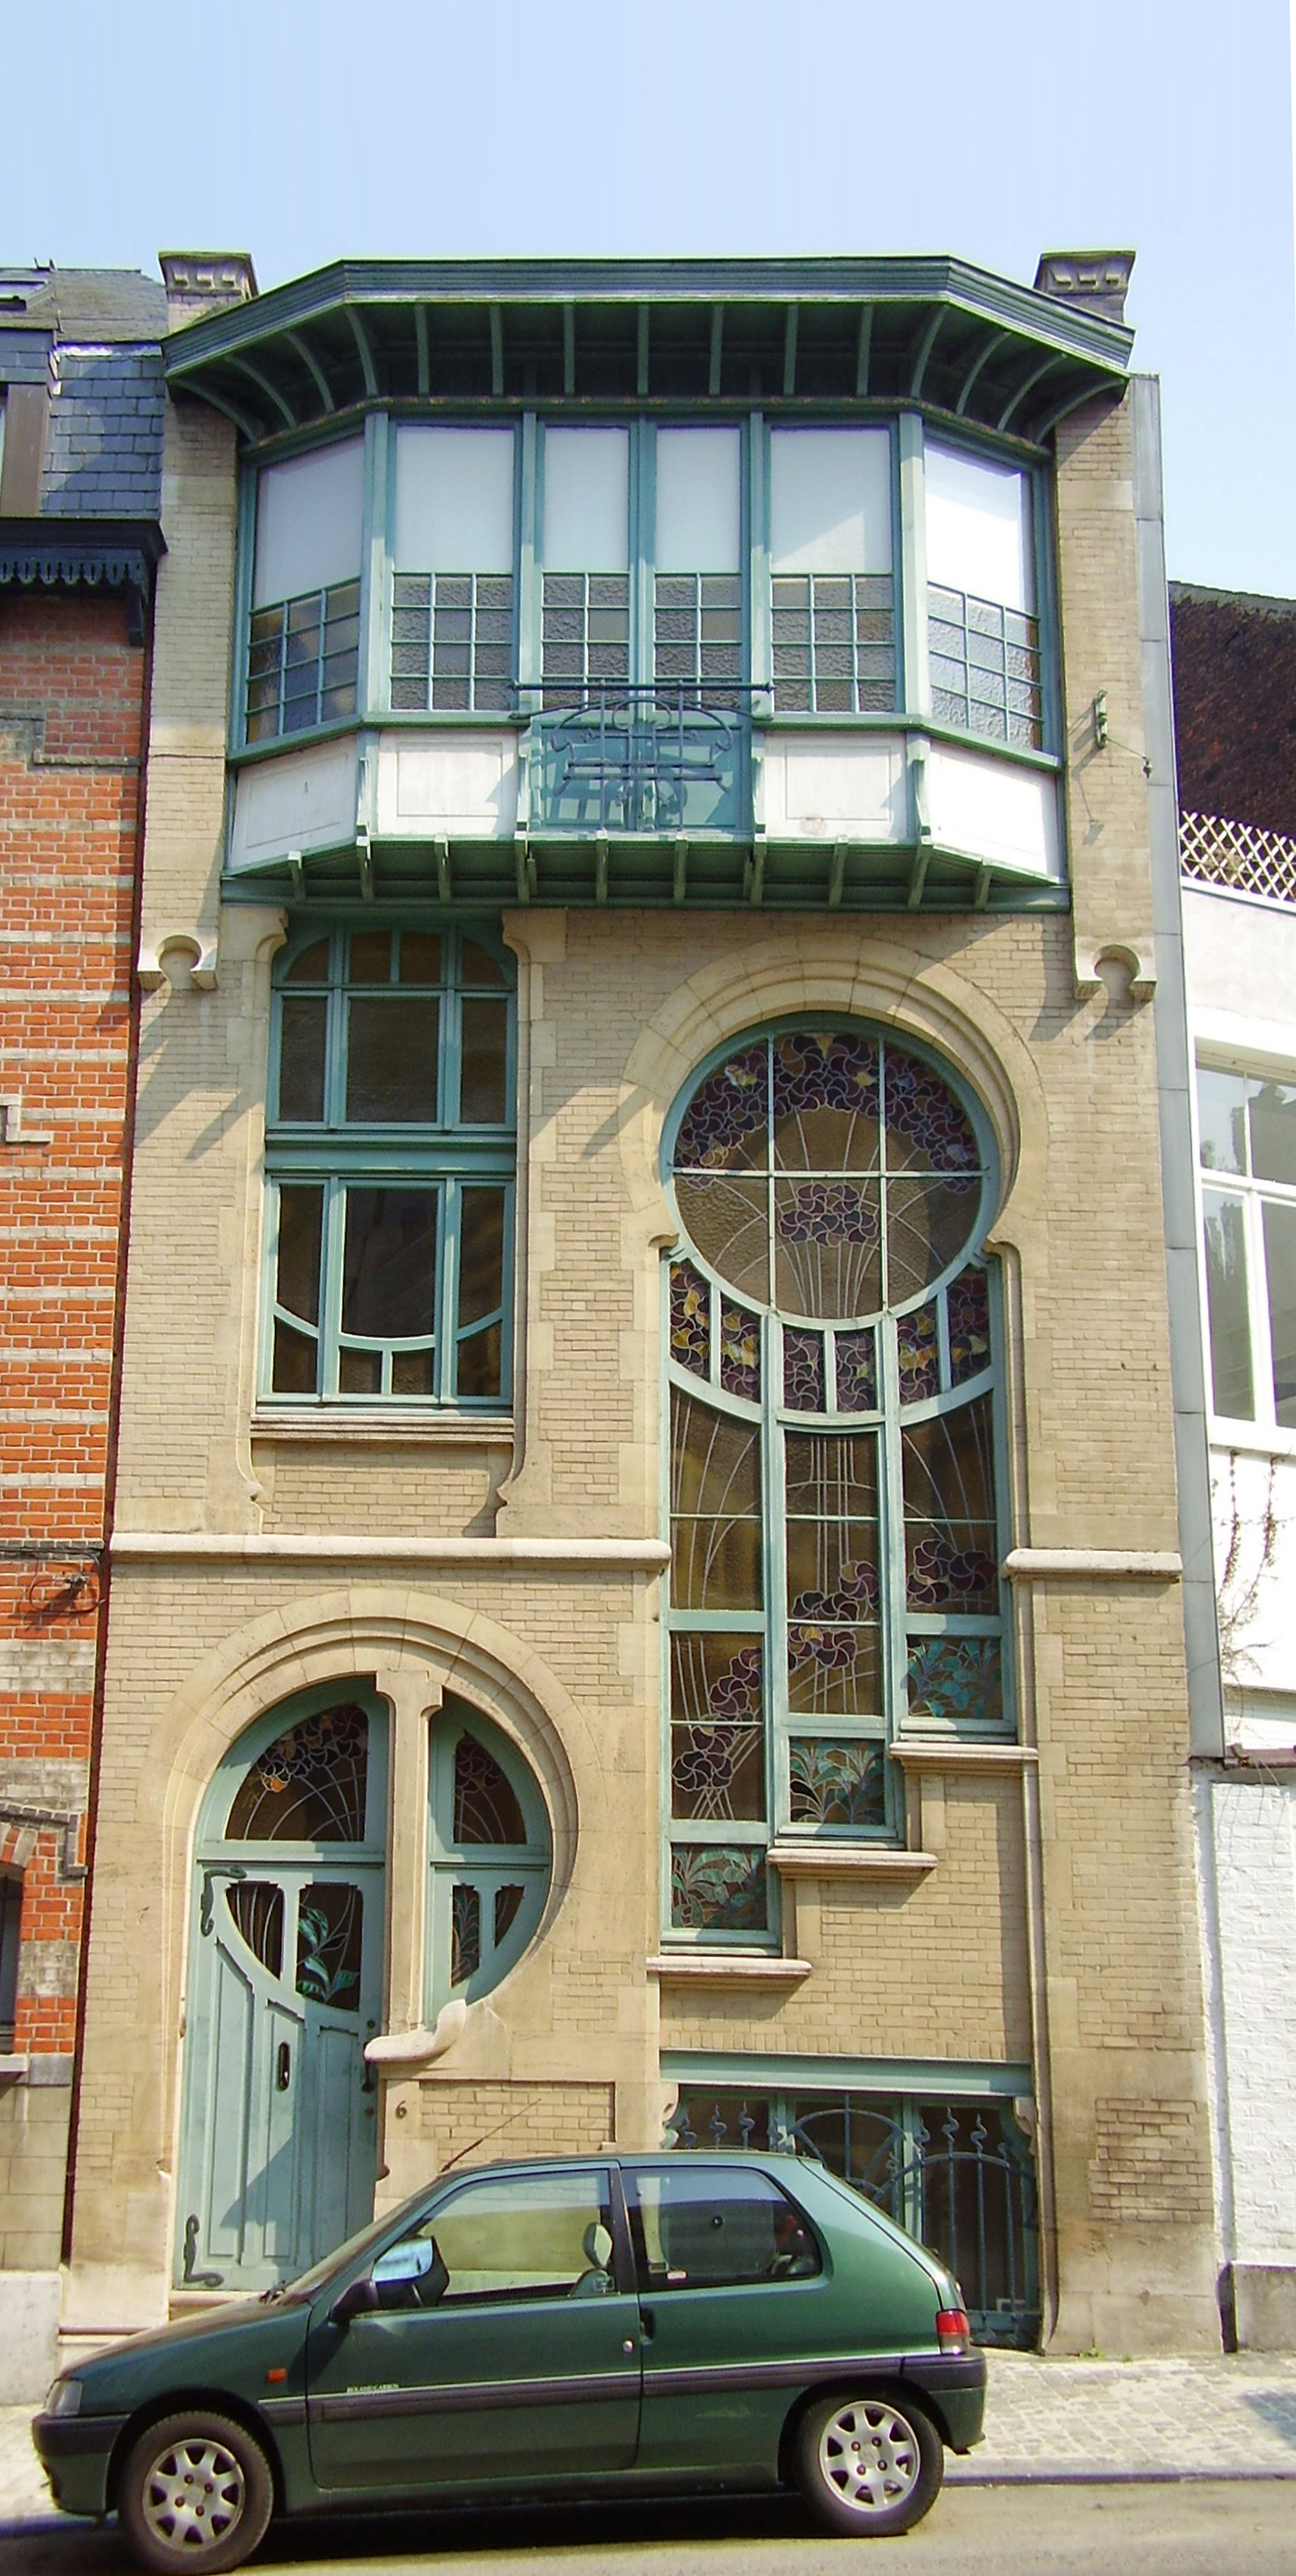 Casa estúdio do vitralista Sterner, em Bruxelas, idealizada pelo arquiteto Ernest Delune e um exemplo clássico de Art Noveau (Foto: Xavax)